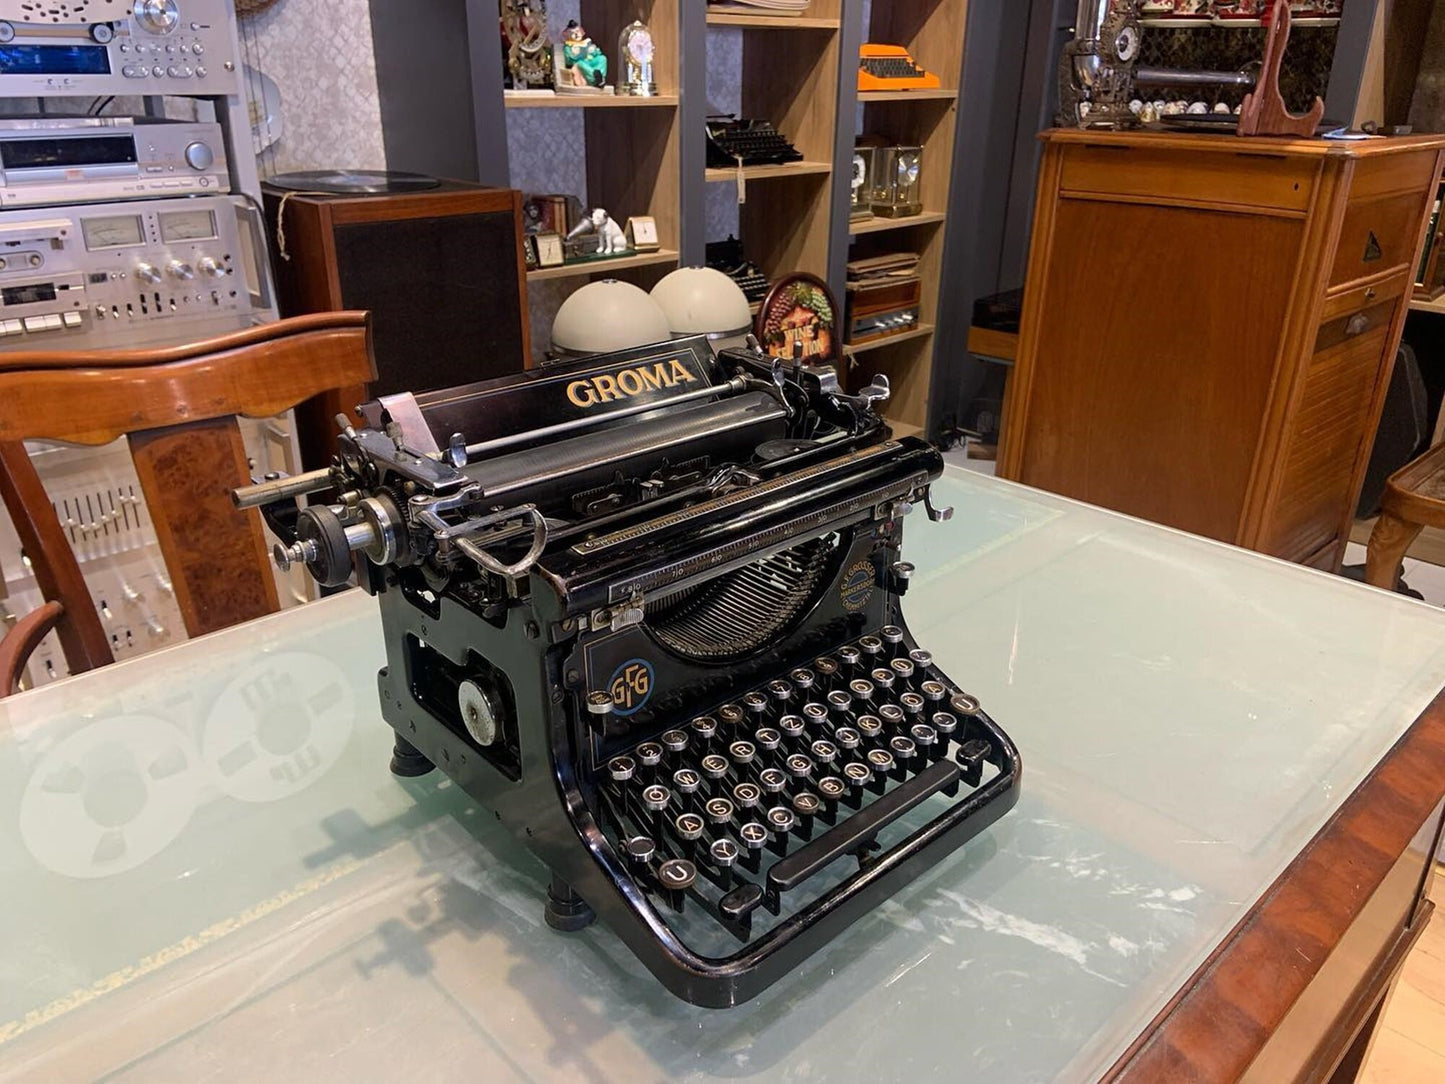 Special  !! Groma Typewriter 1935 | Old Typewriter | Vintage Typewriter,typewriter working